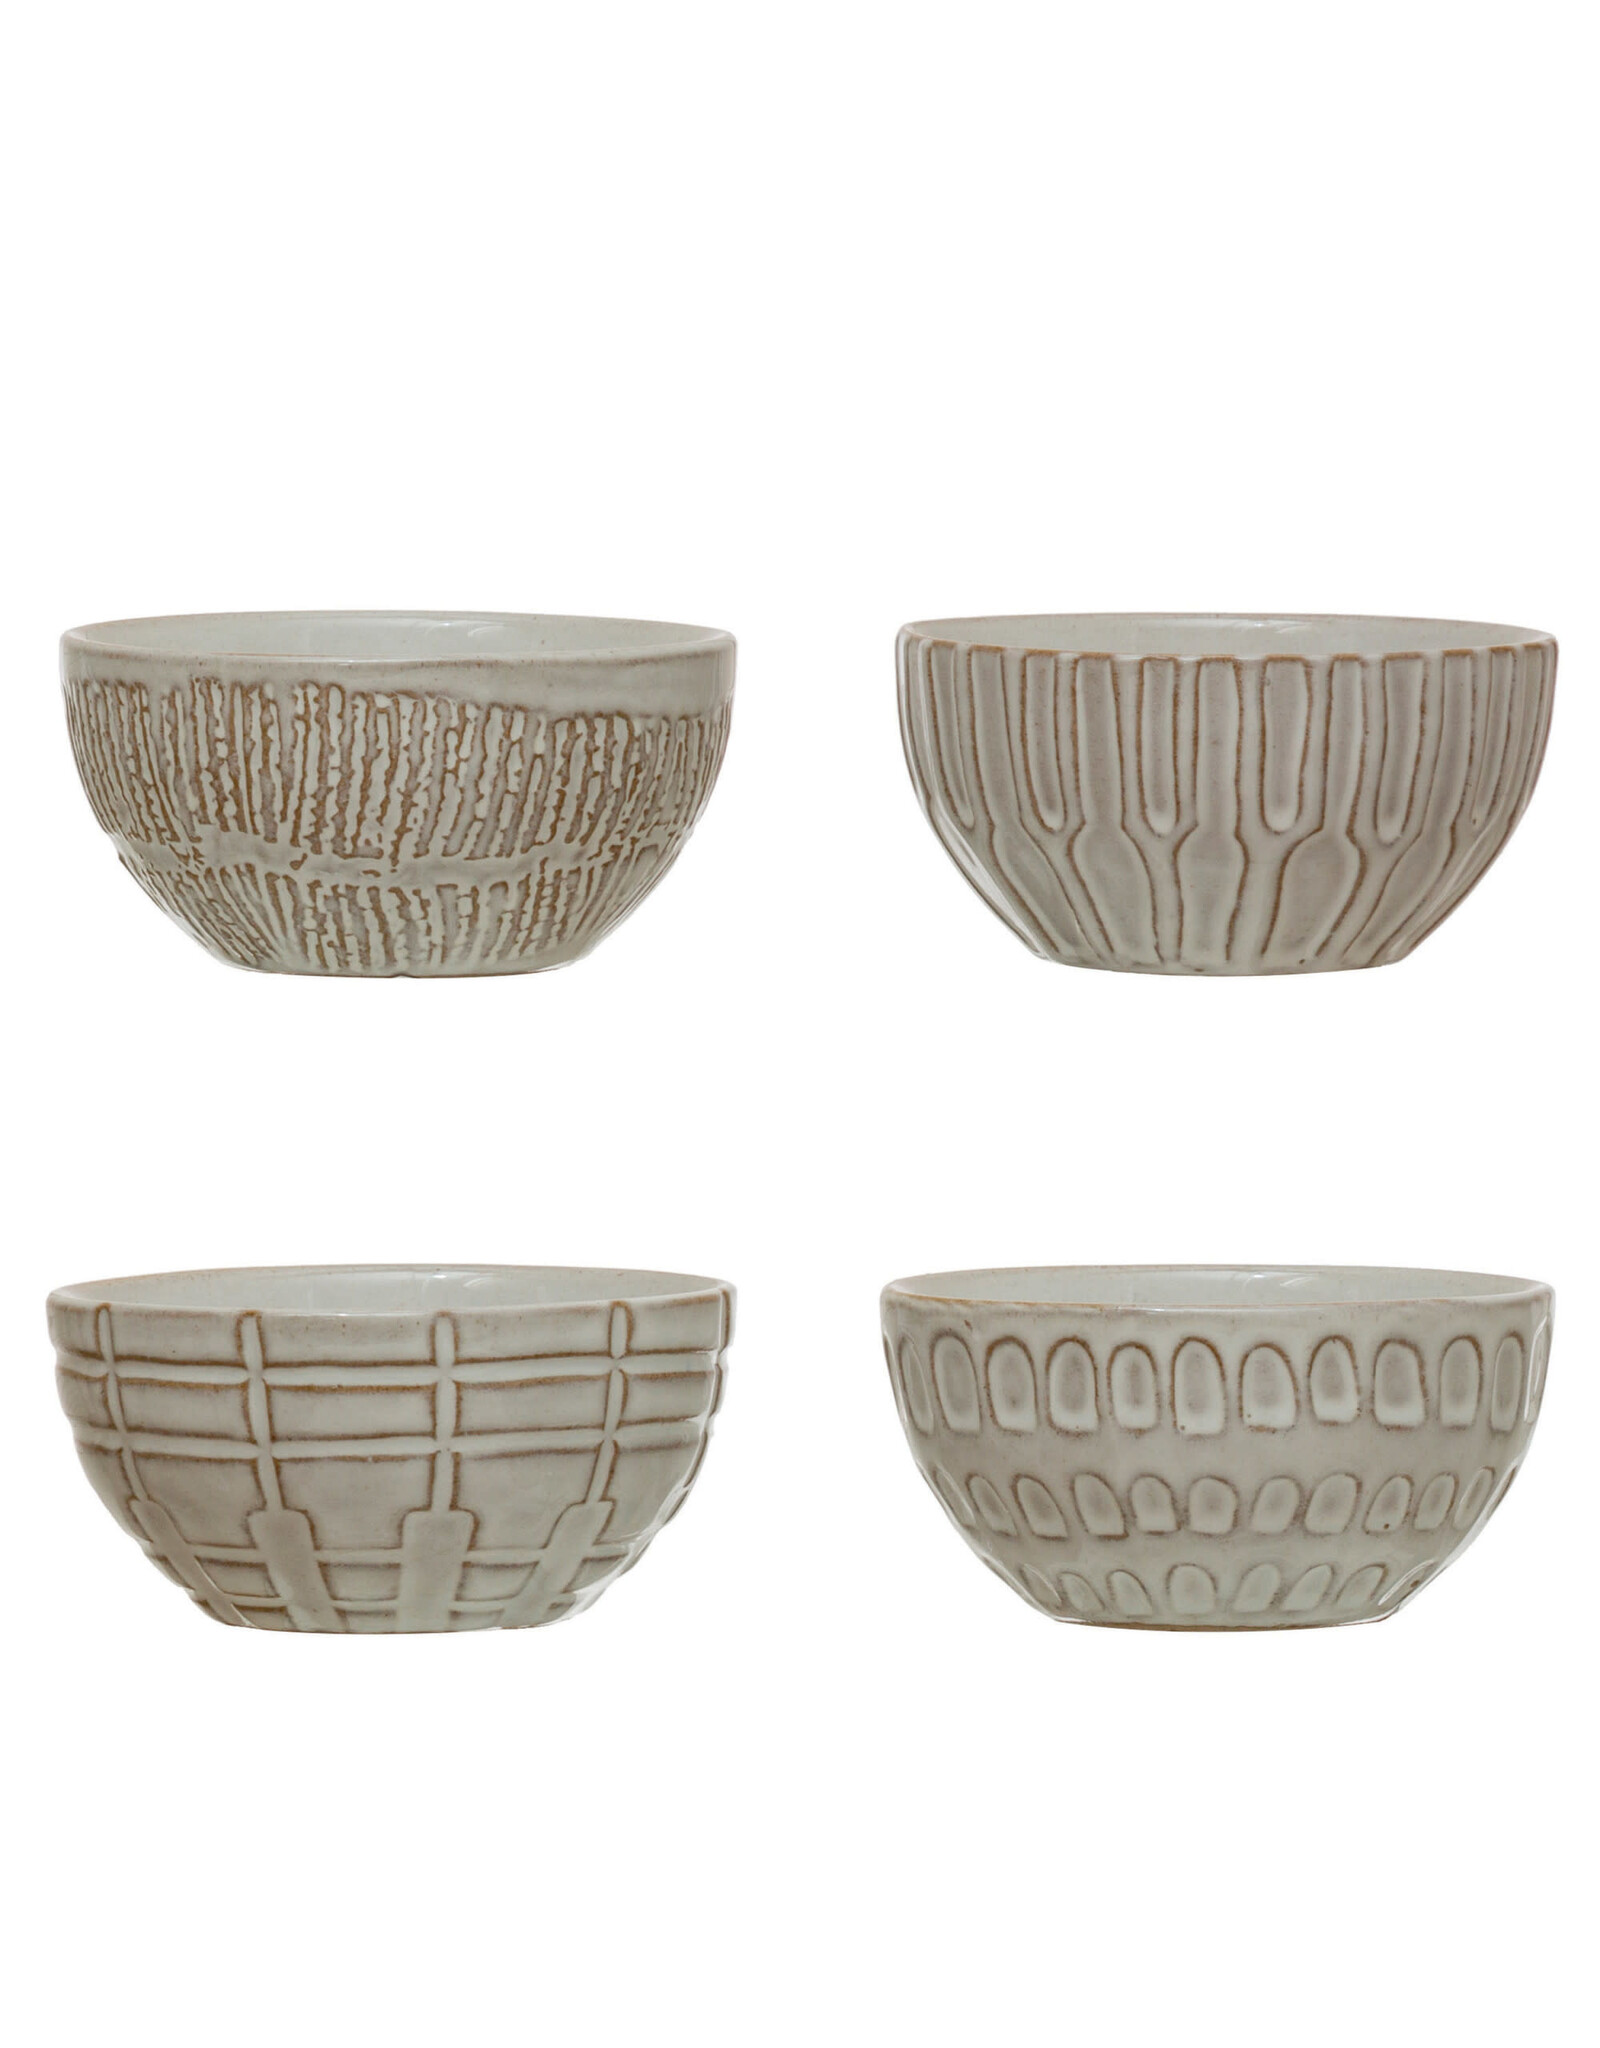 Debossed Stoneware Bowl, 4 Styles  Each DF4360